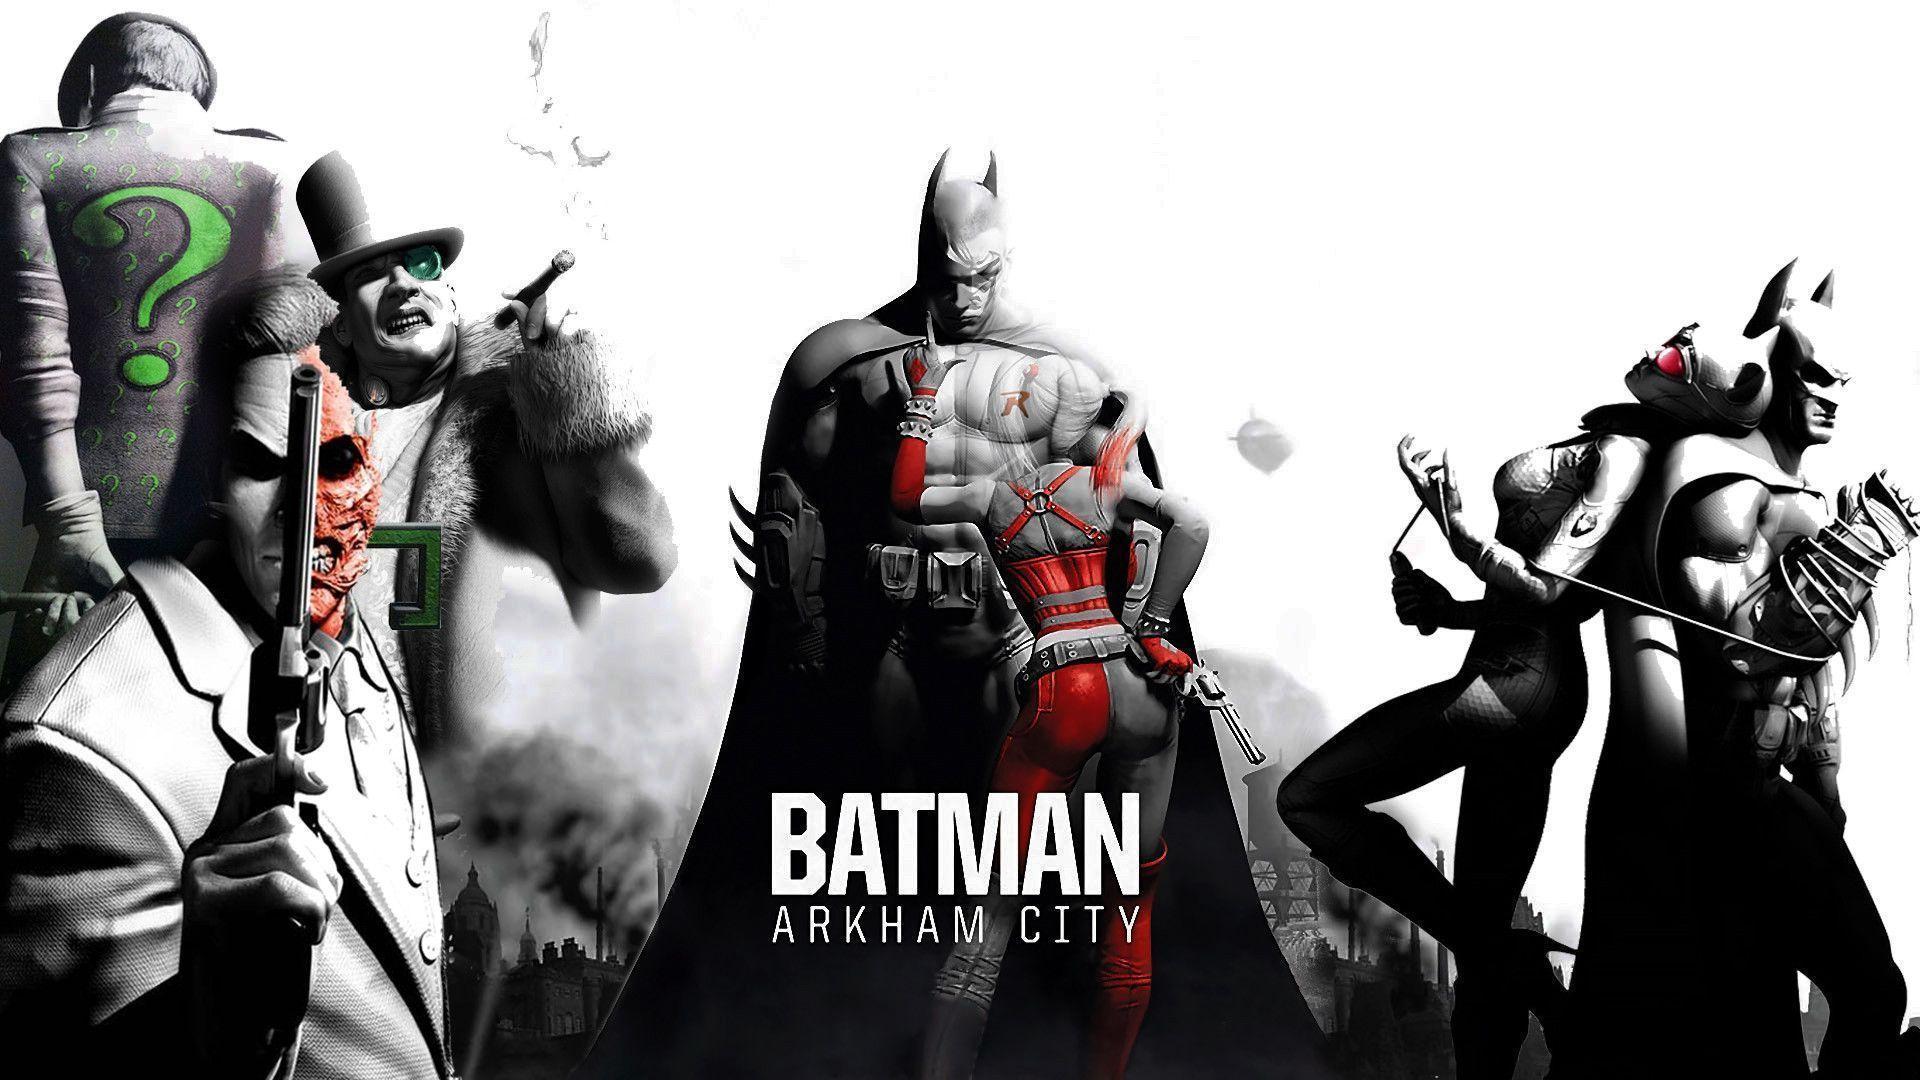 Batman Arkham City photos.jpg